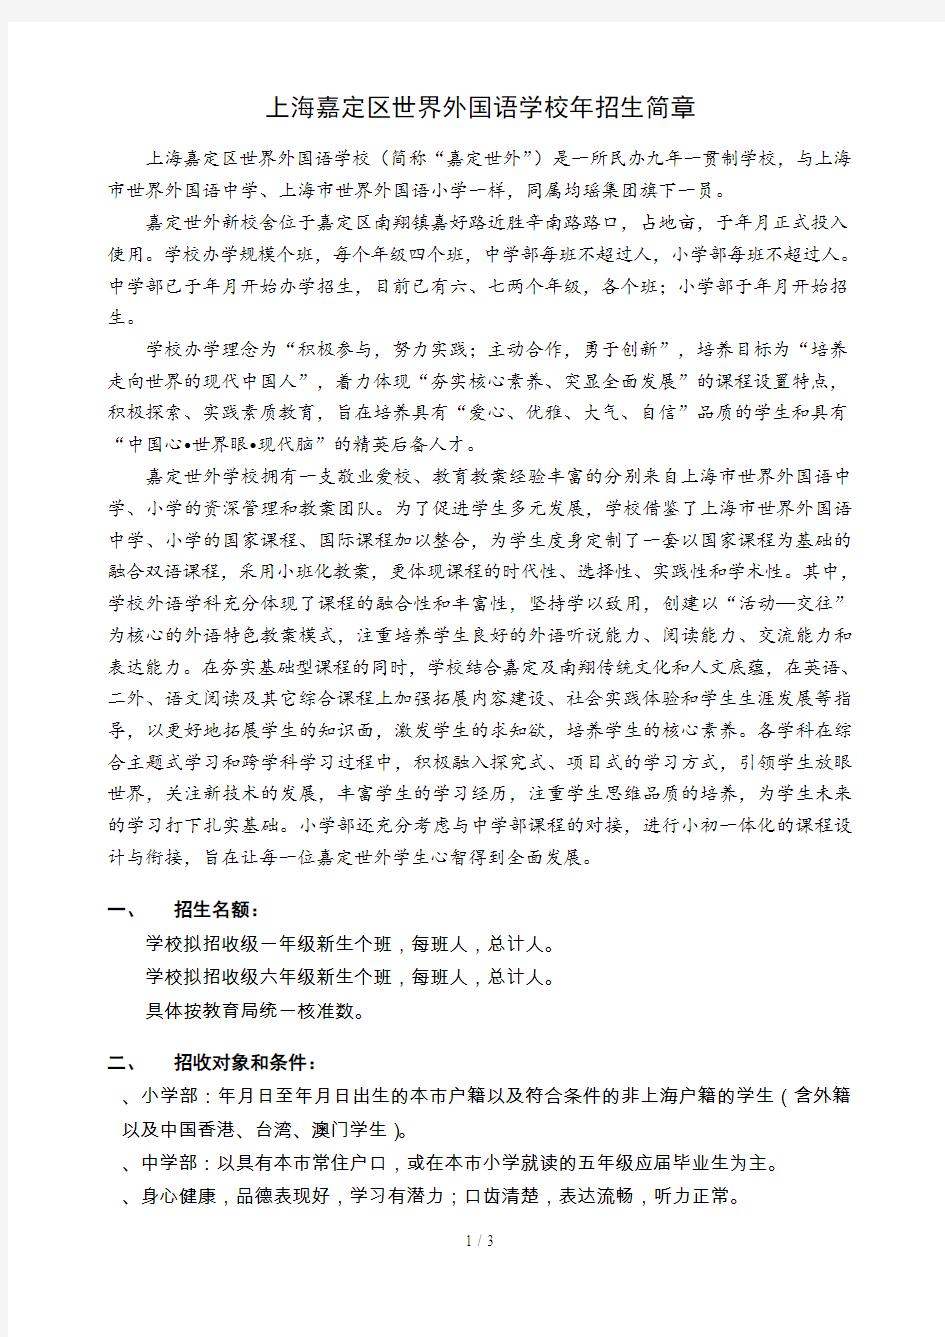 上海嘉定区世界外国语学校2019年招生简章